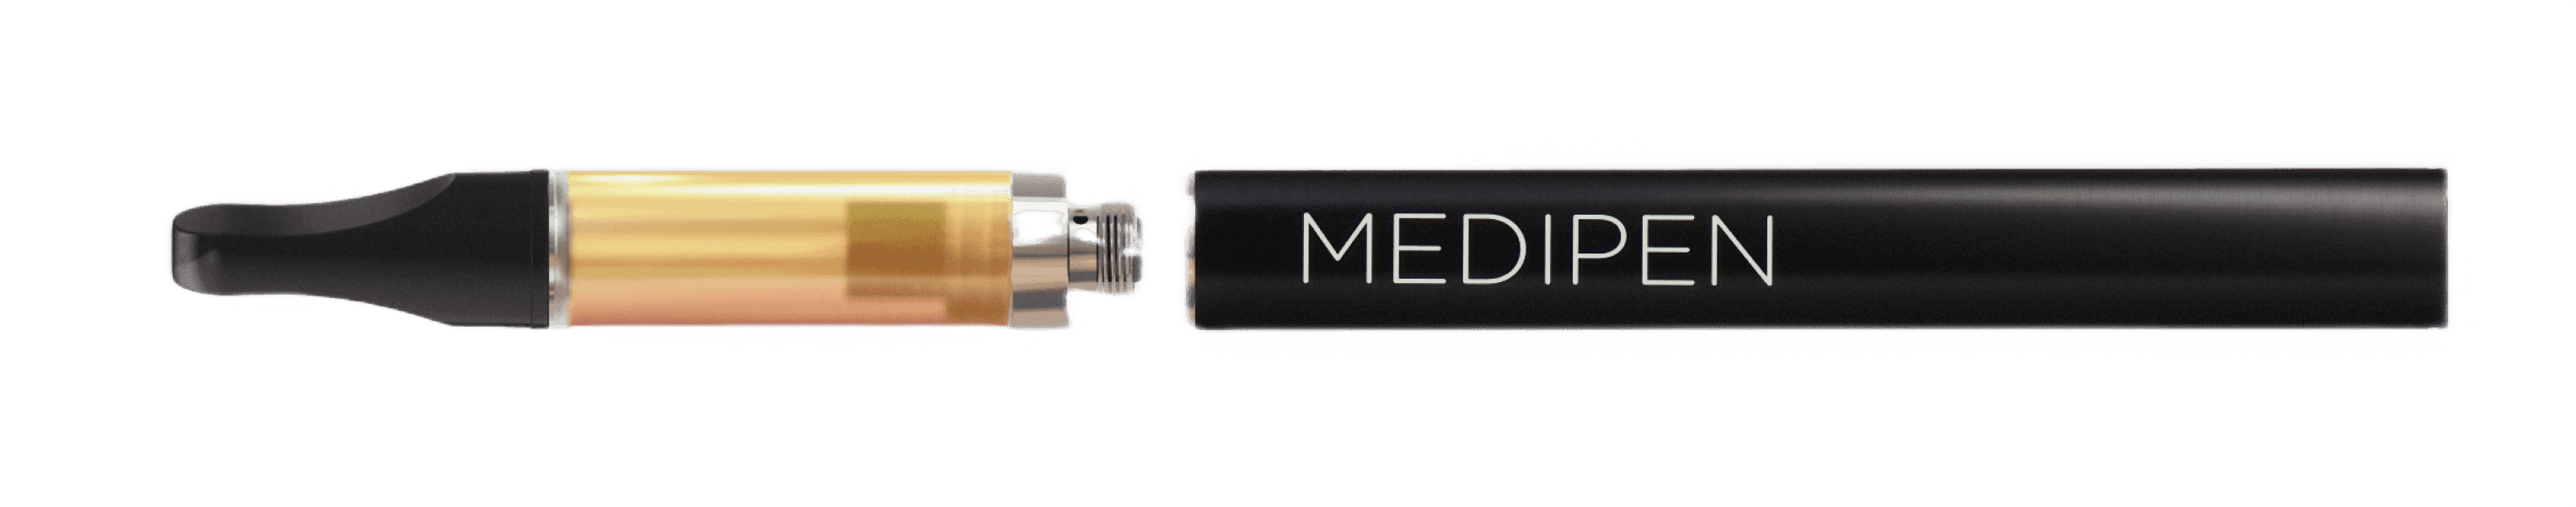 MediPen - Best CBD Vaporizer